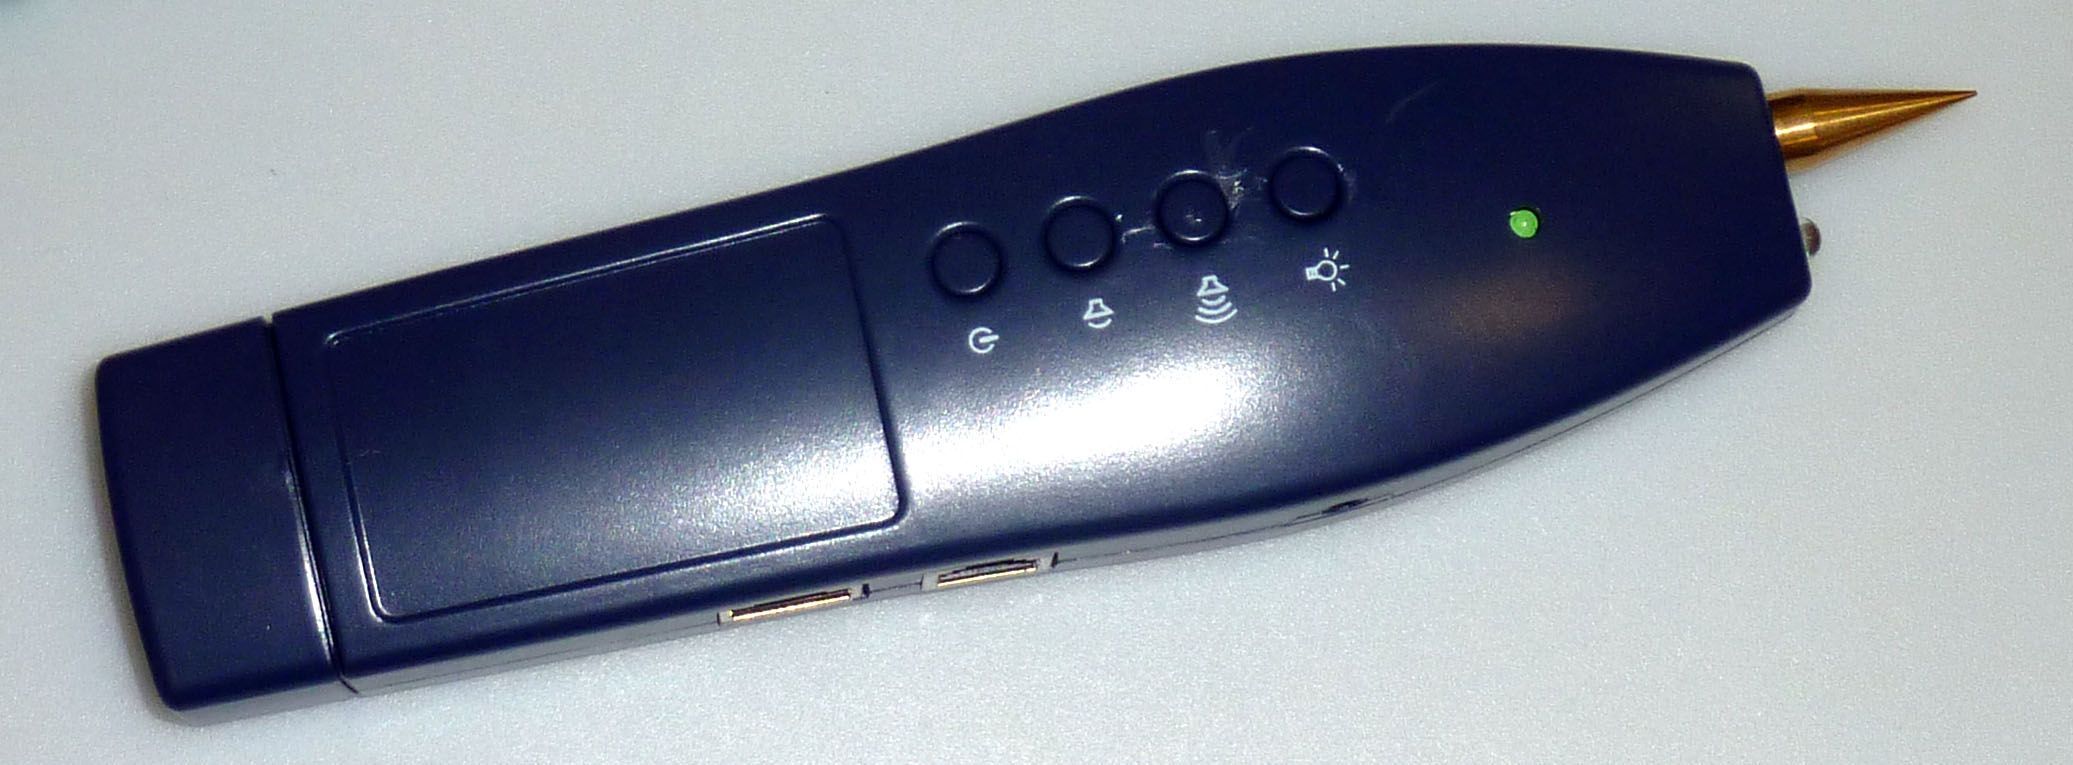 SDI3600S